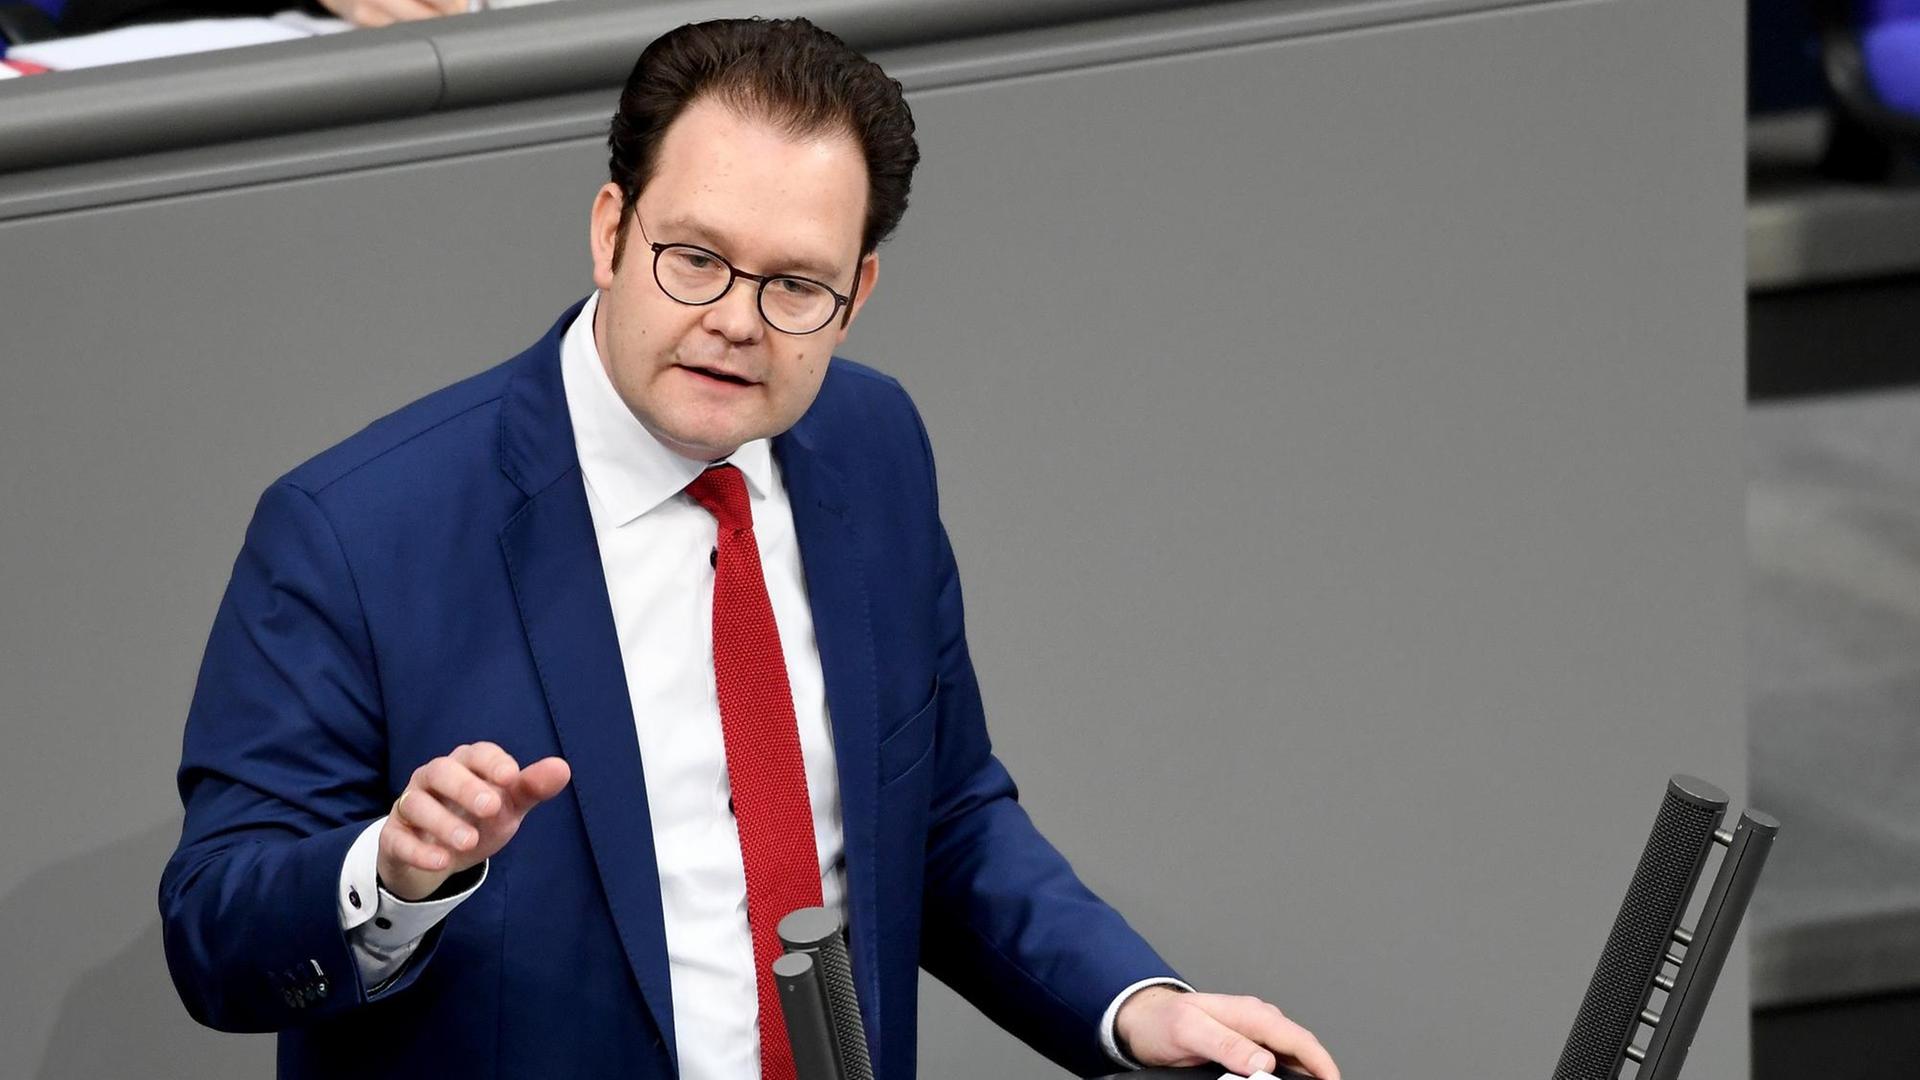 Tankred Schipanski (CDU), spricht bei der 83. Sitzung des Bundestags zur Umsetzungsstrategie Digitalisierung